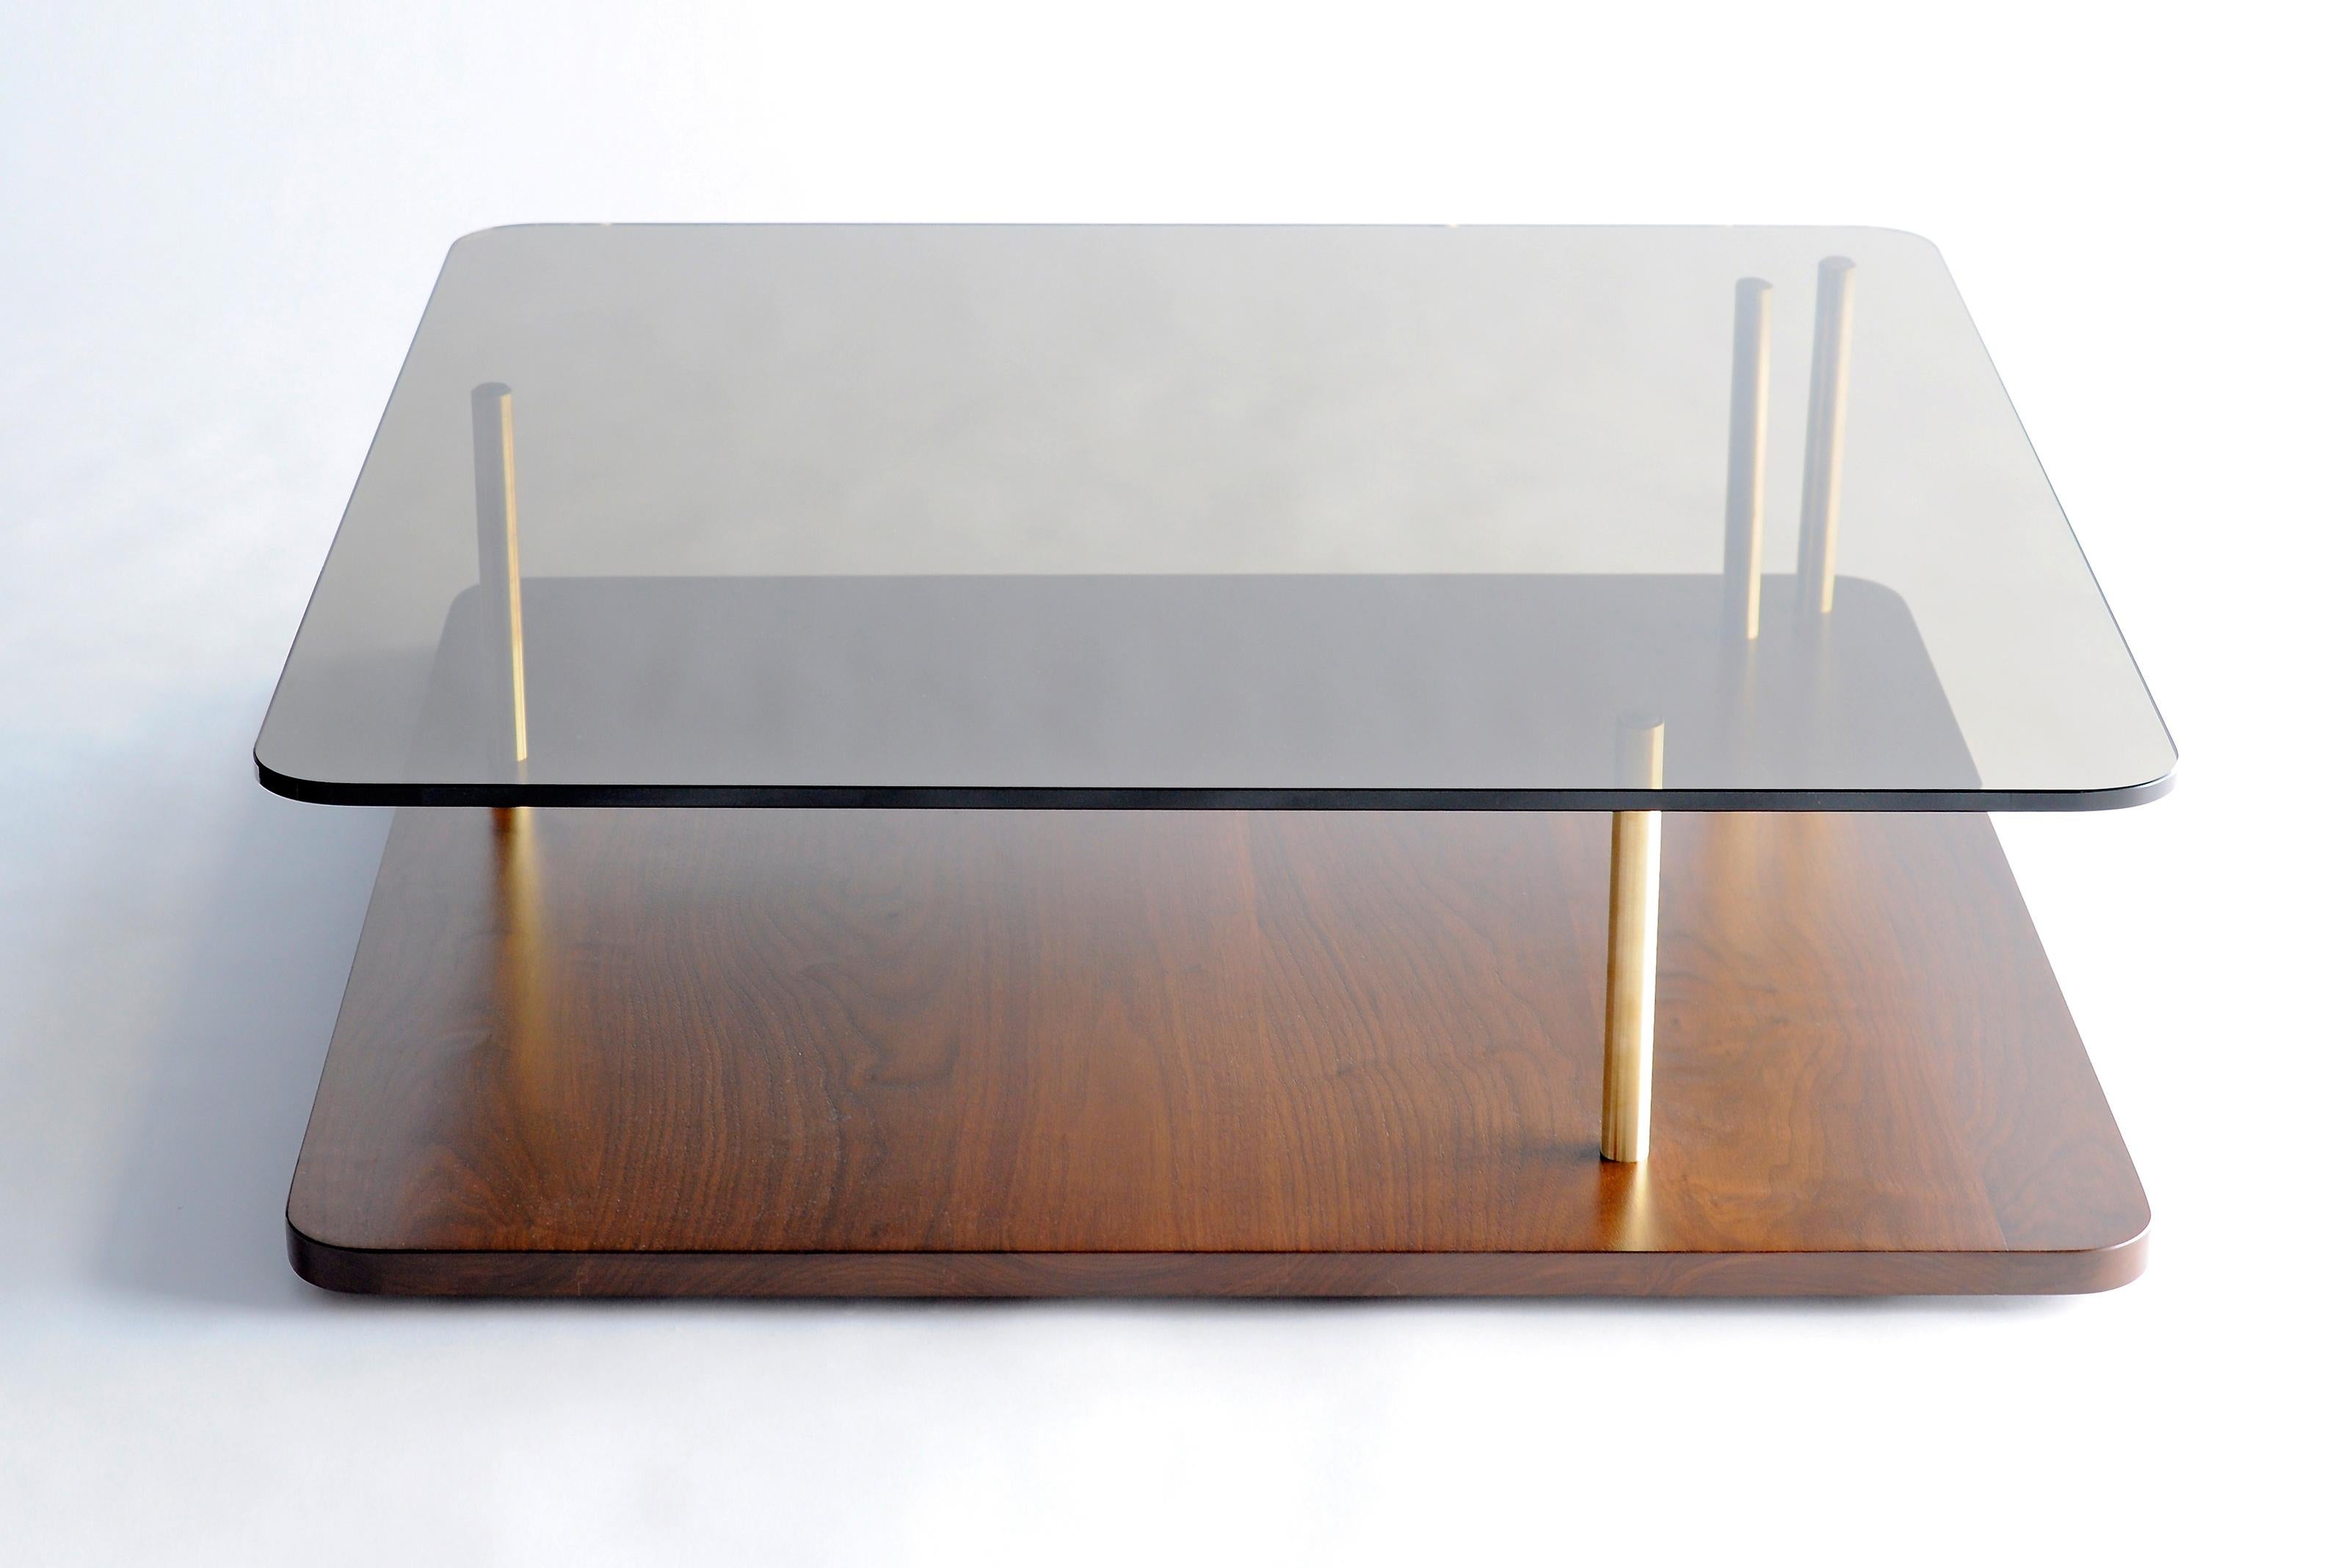 Table basse carrée Points of Interest de Phase Design
Dimensions : P 96,5 x L 96,5 x H 29,2 cm. 
MATERIAL : Noyer, verre et laiton.

La base en bois massif est disponible en noyer, chêne blanc et chêne ébène. Les colonnes de support sont disponibles